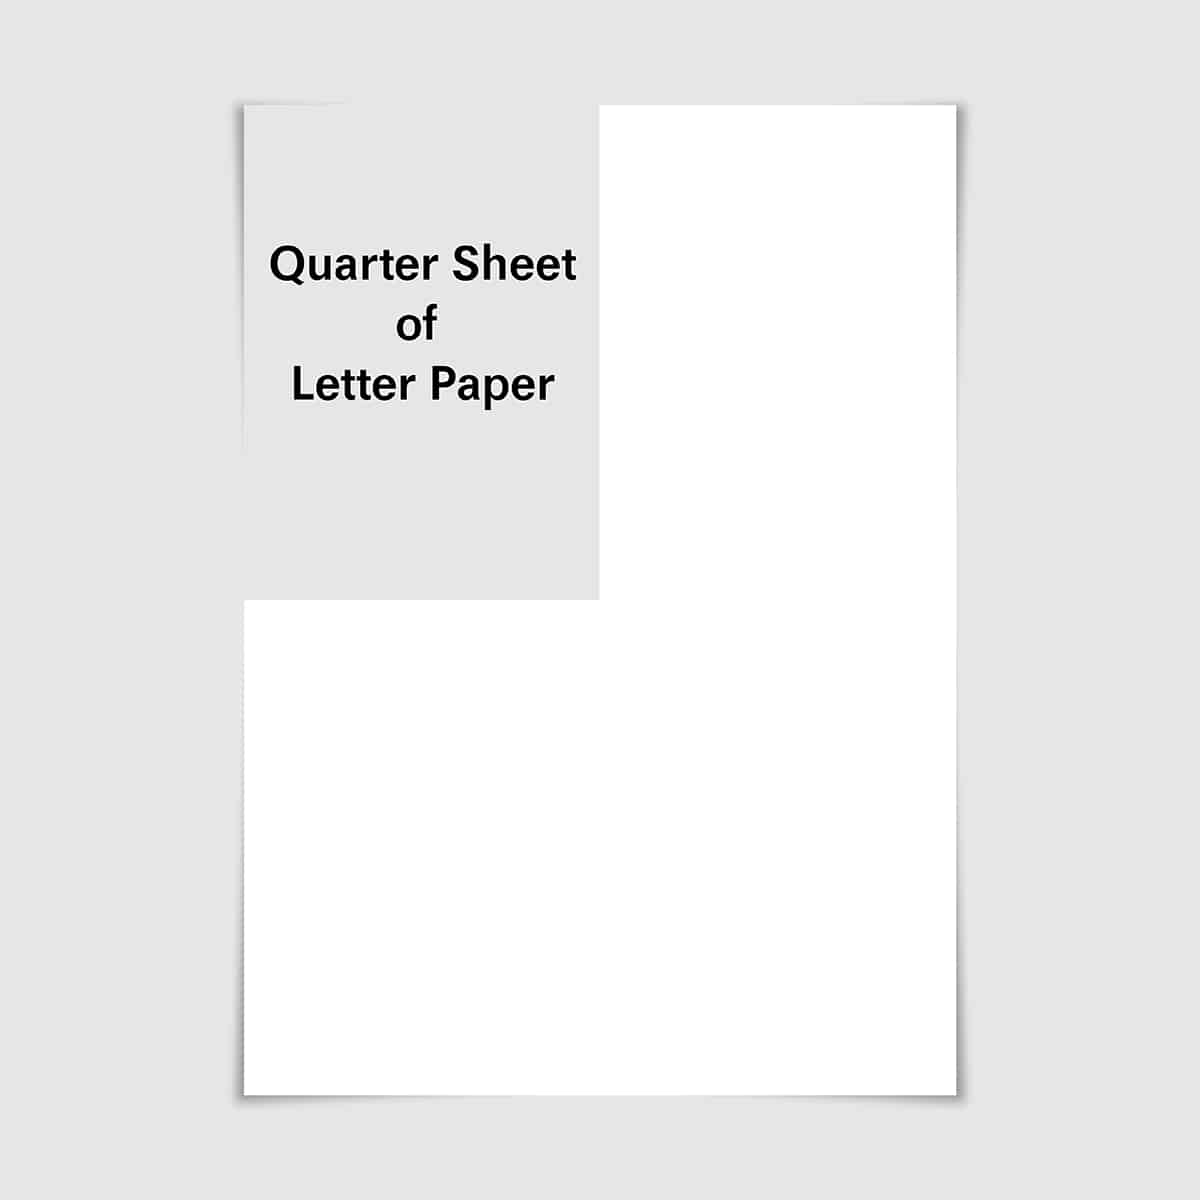 Quarter Sheet of Letter Paper